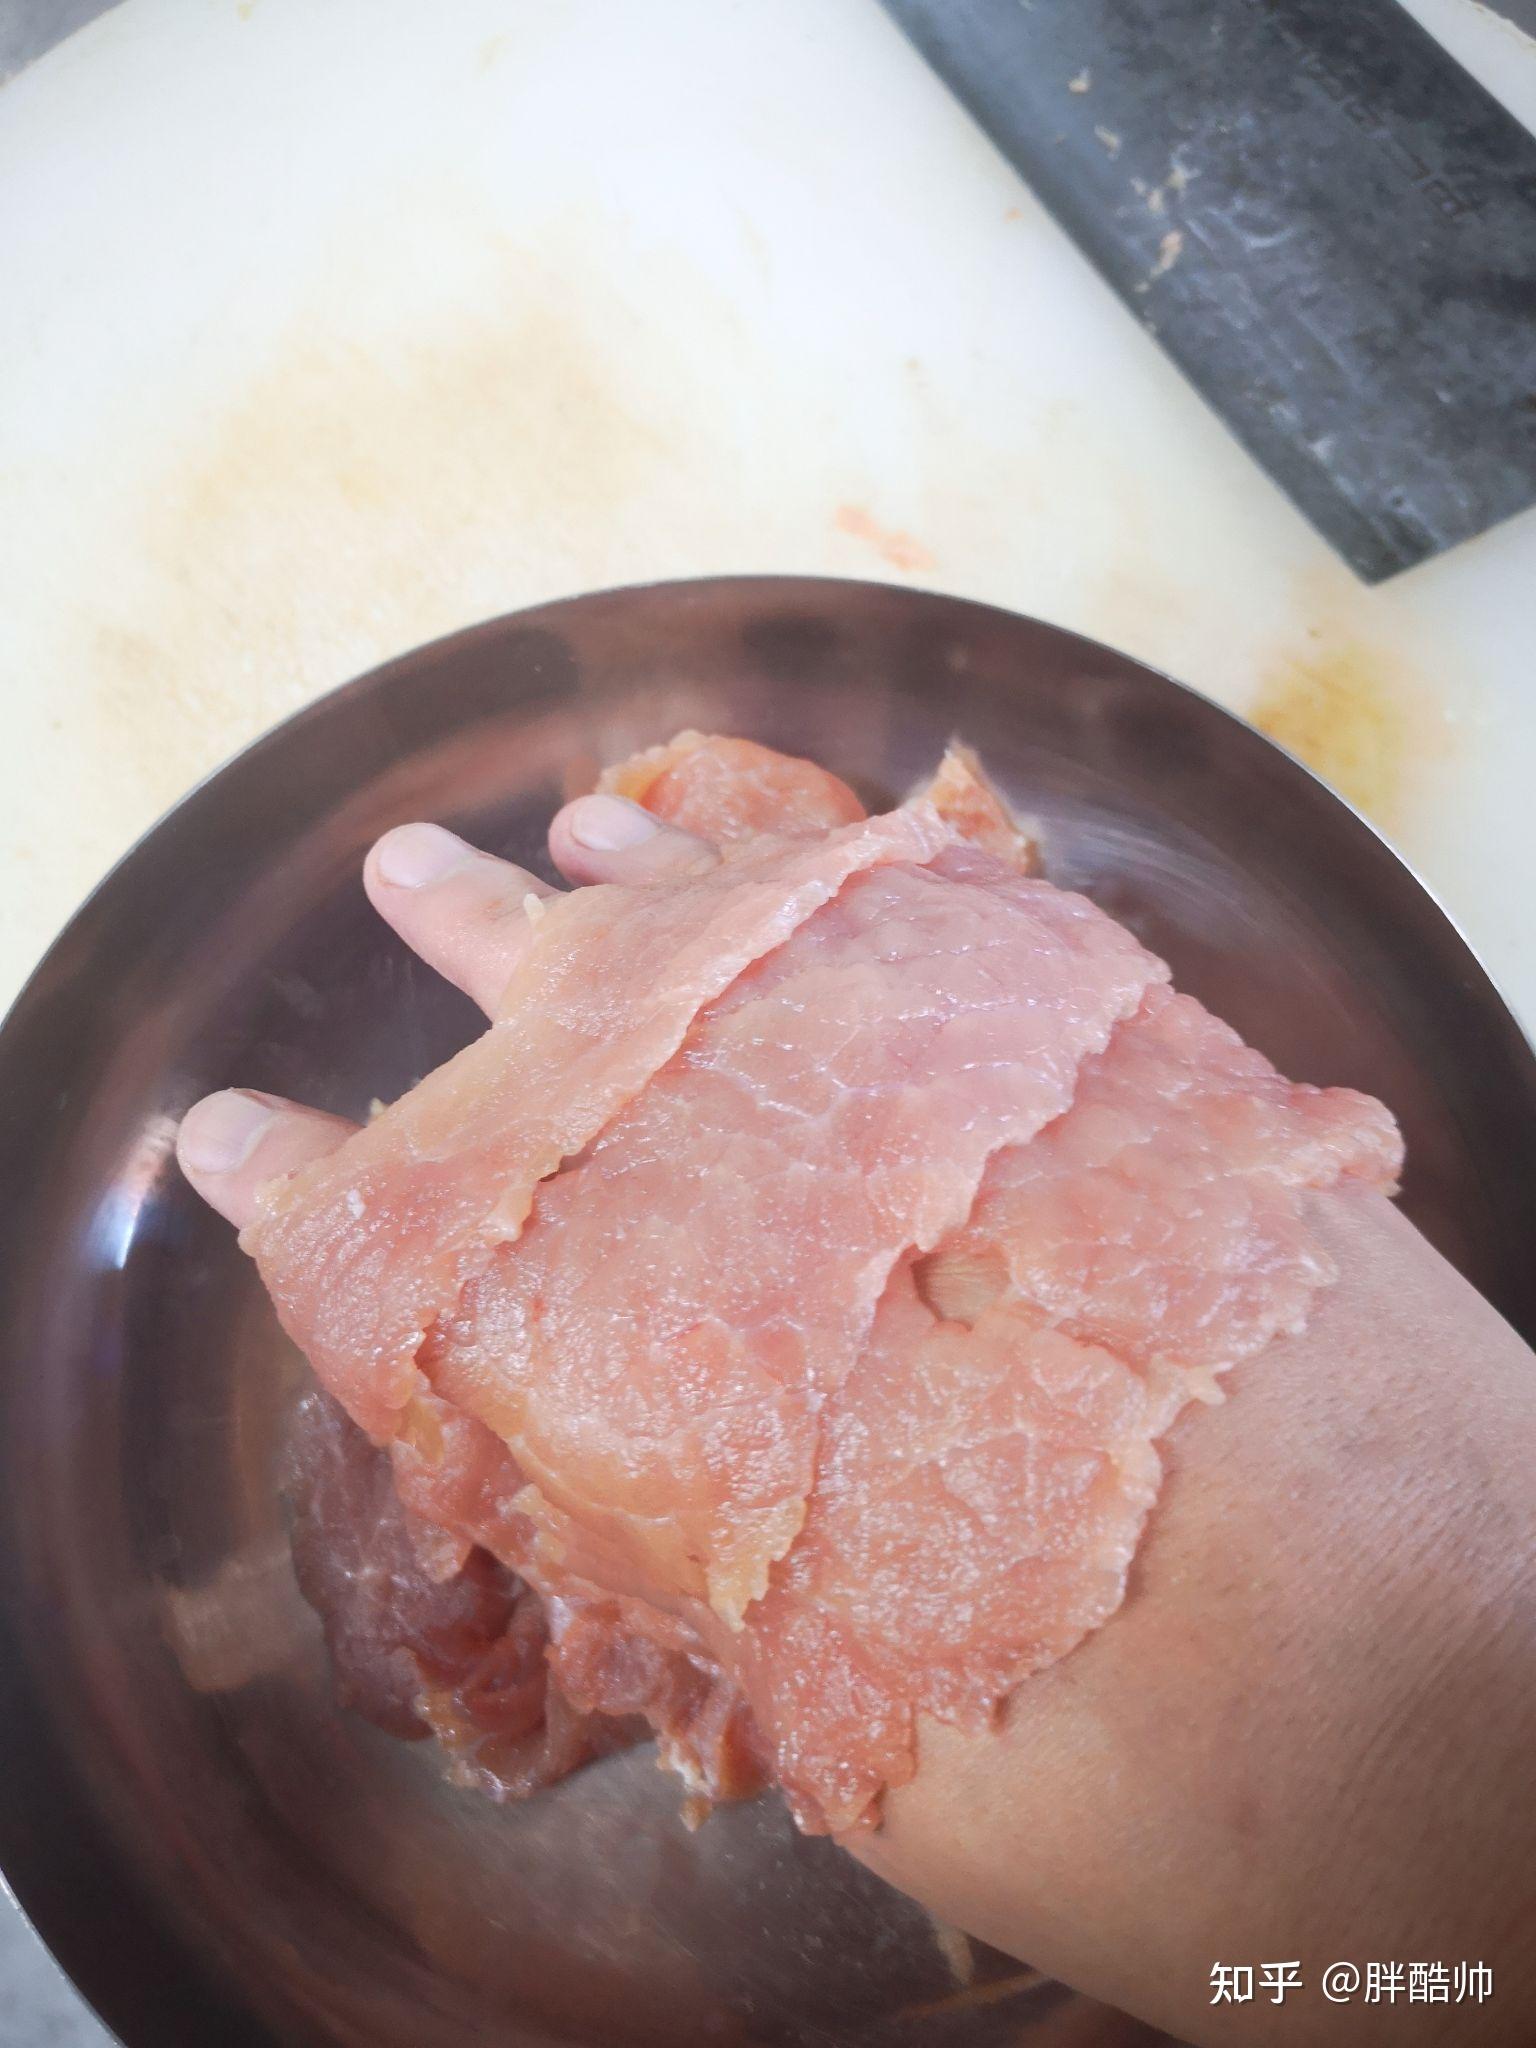 薄一点的大肉片子板筋切做胡豆大的丁肥肉切碎熬油,为了做撒料,细一些